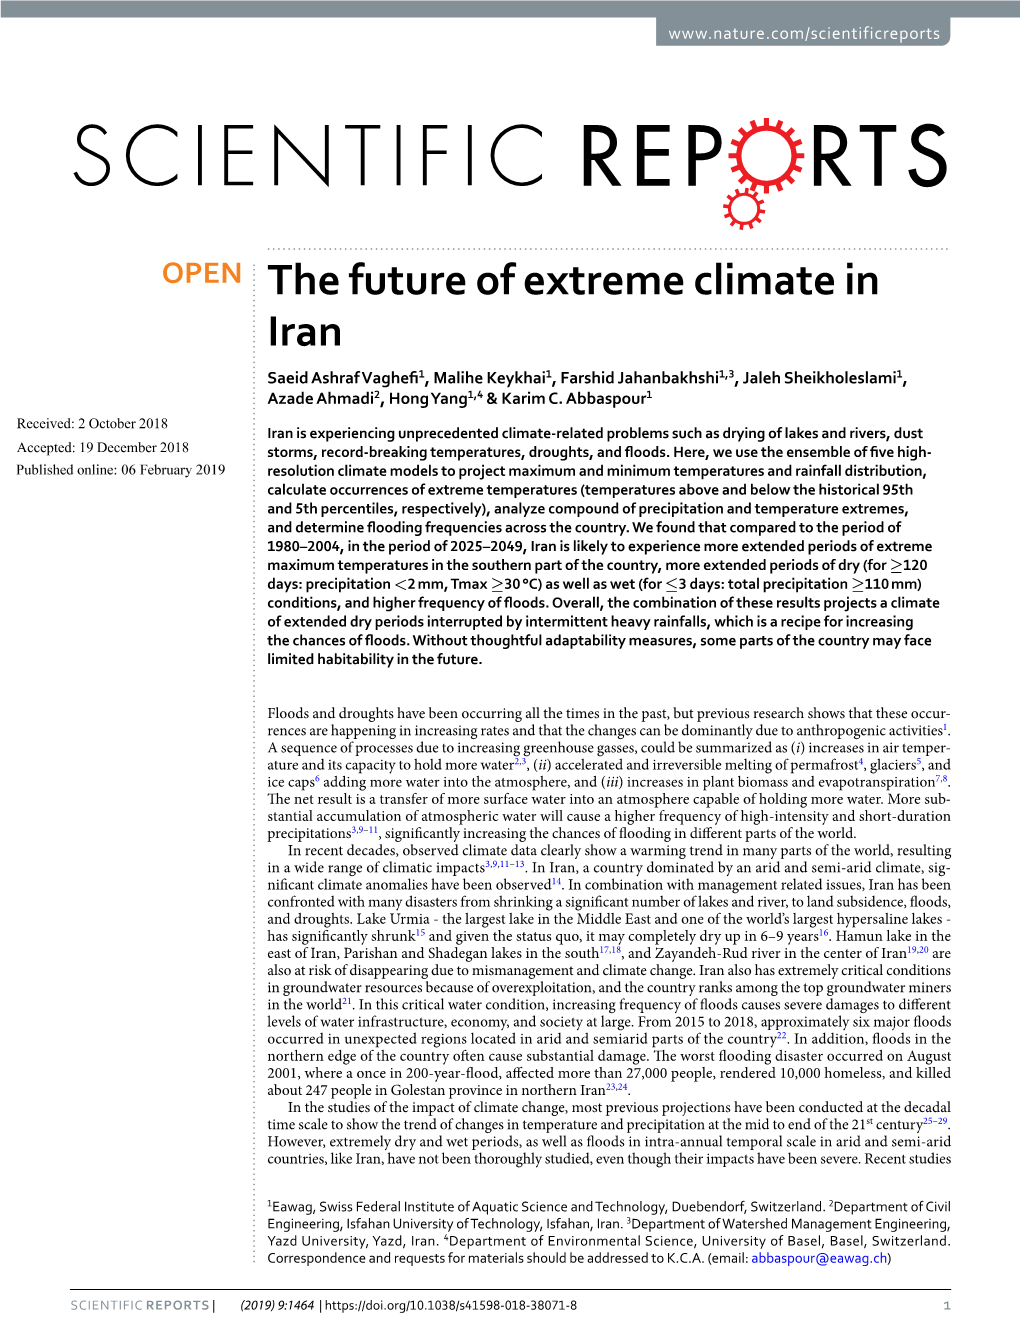 The Future of Extreme Climate in Iran Saeid Ashraf Vaghef1, Malihe Keykhai1, Farshid Jahanbakhshi1,3, Jaleh Sheikholeslami1, Azade Ahmadi2, Hong Yang1,4 & Karim C